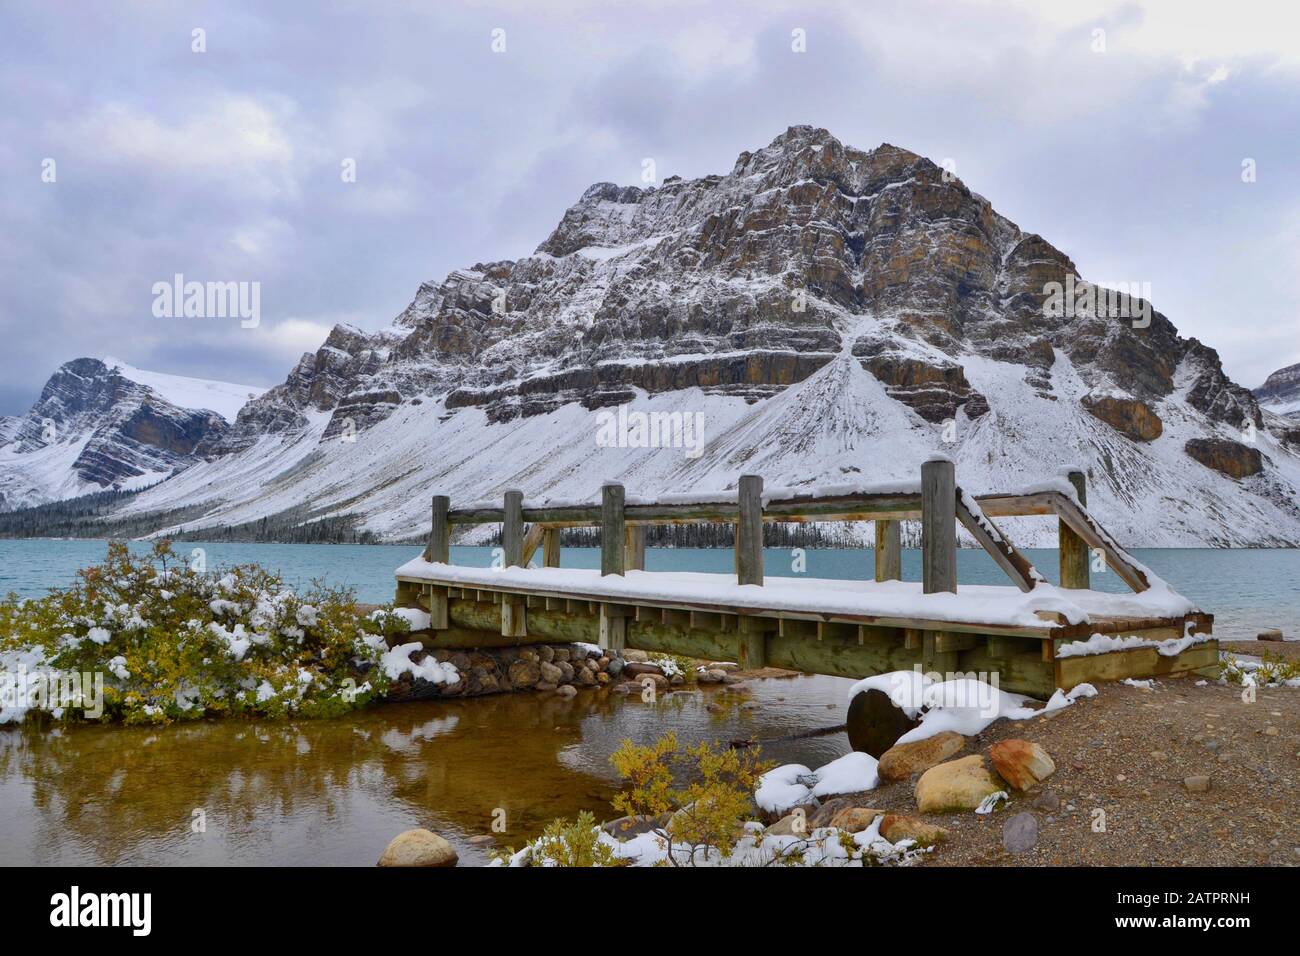 Eau bleue du lac Bow, montagnes couvertes de neige. Pont en bois, nuages gris, vue de la rive. Parc National Banff, Montagnes Rocheuses, Canada. Banque D'Images